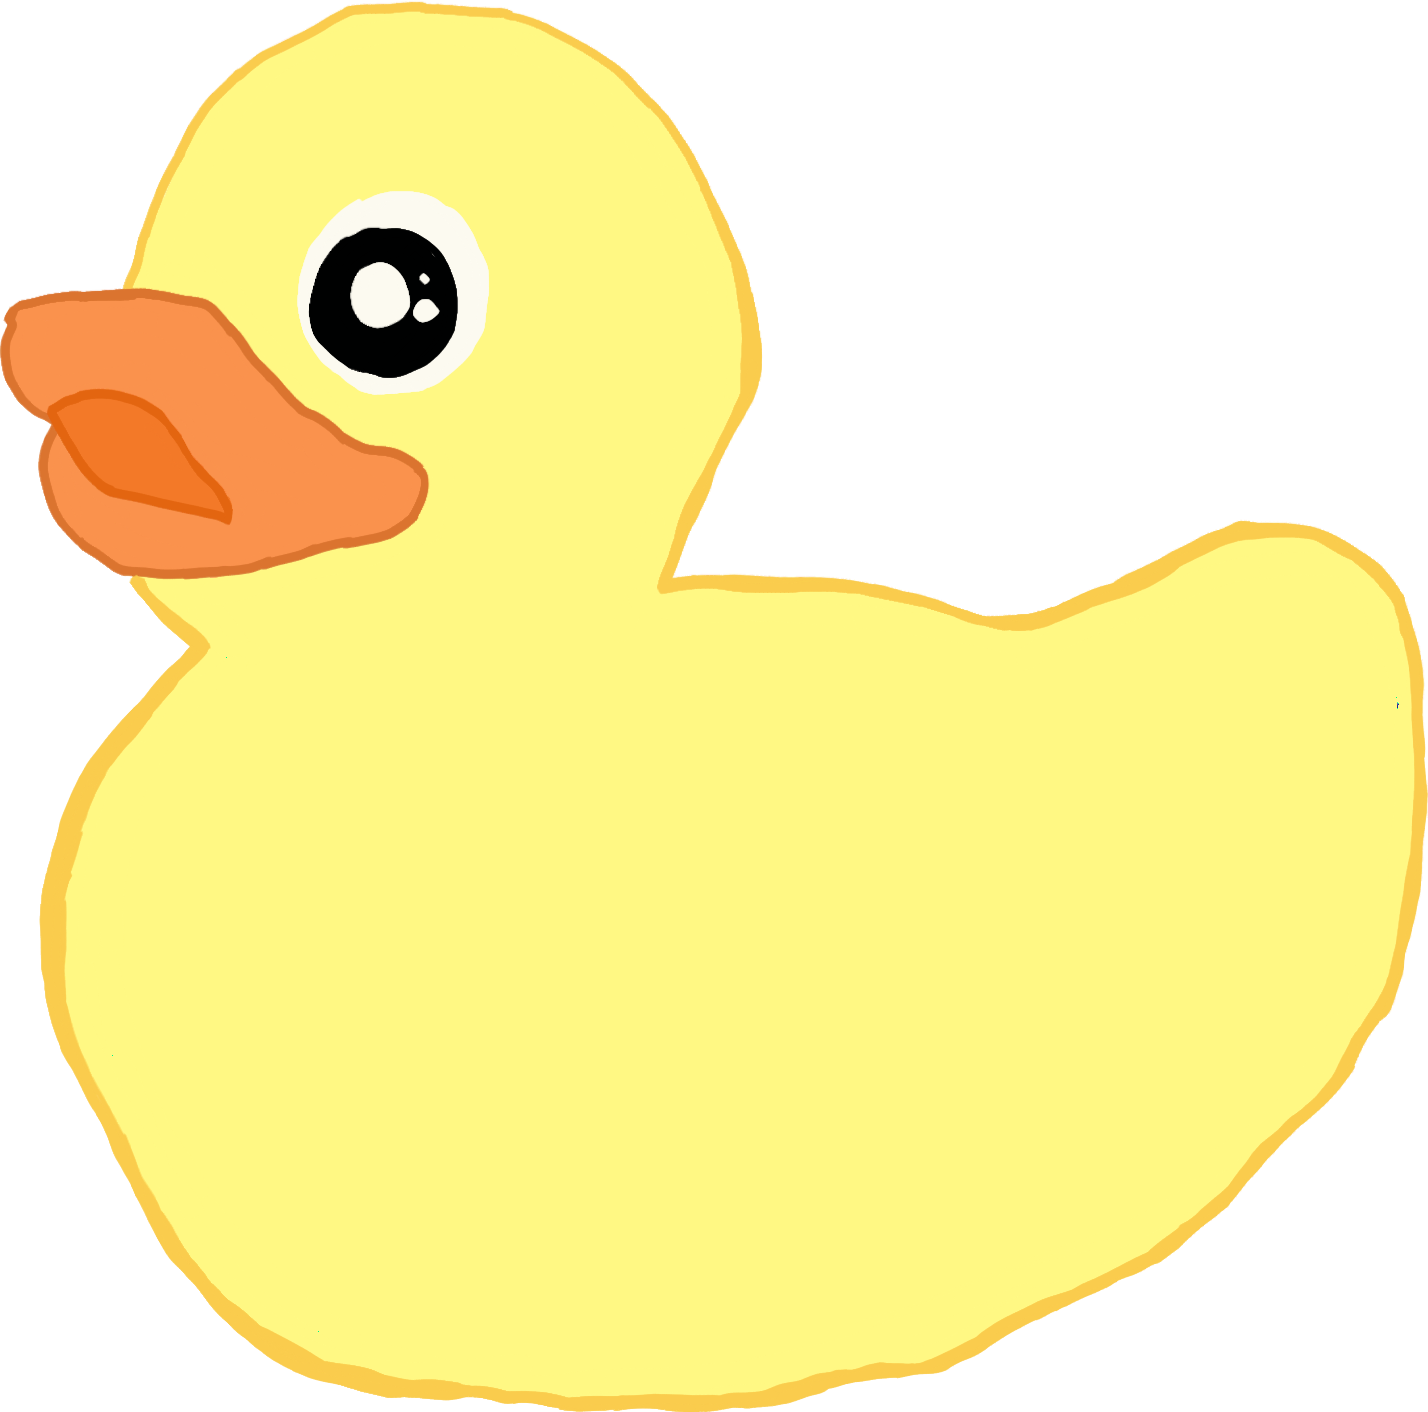 scduck duck rubberduck rubber sticker by @sparklingsquid